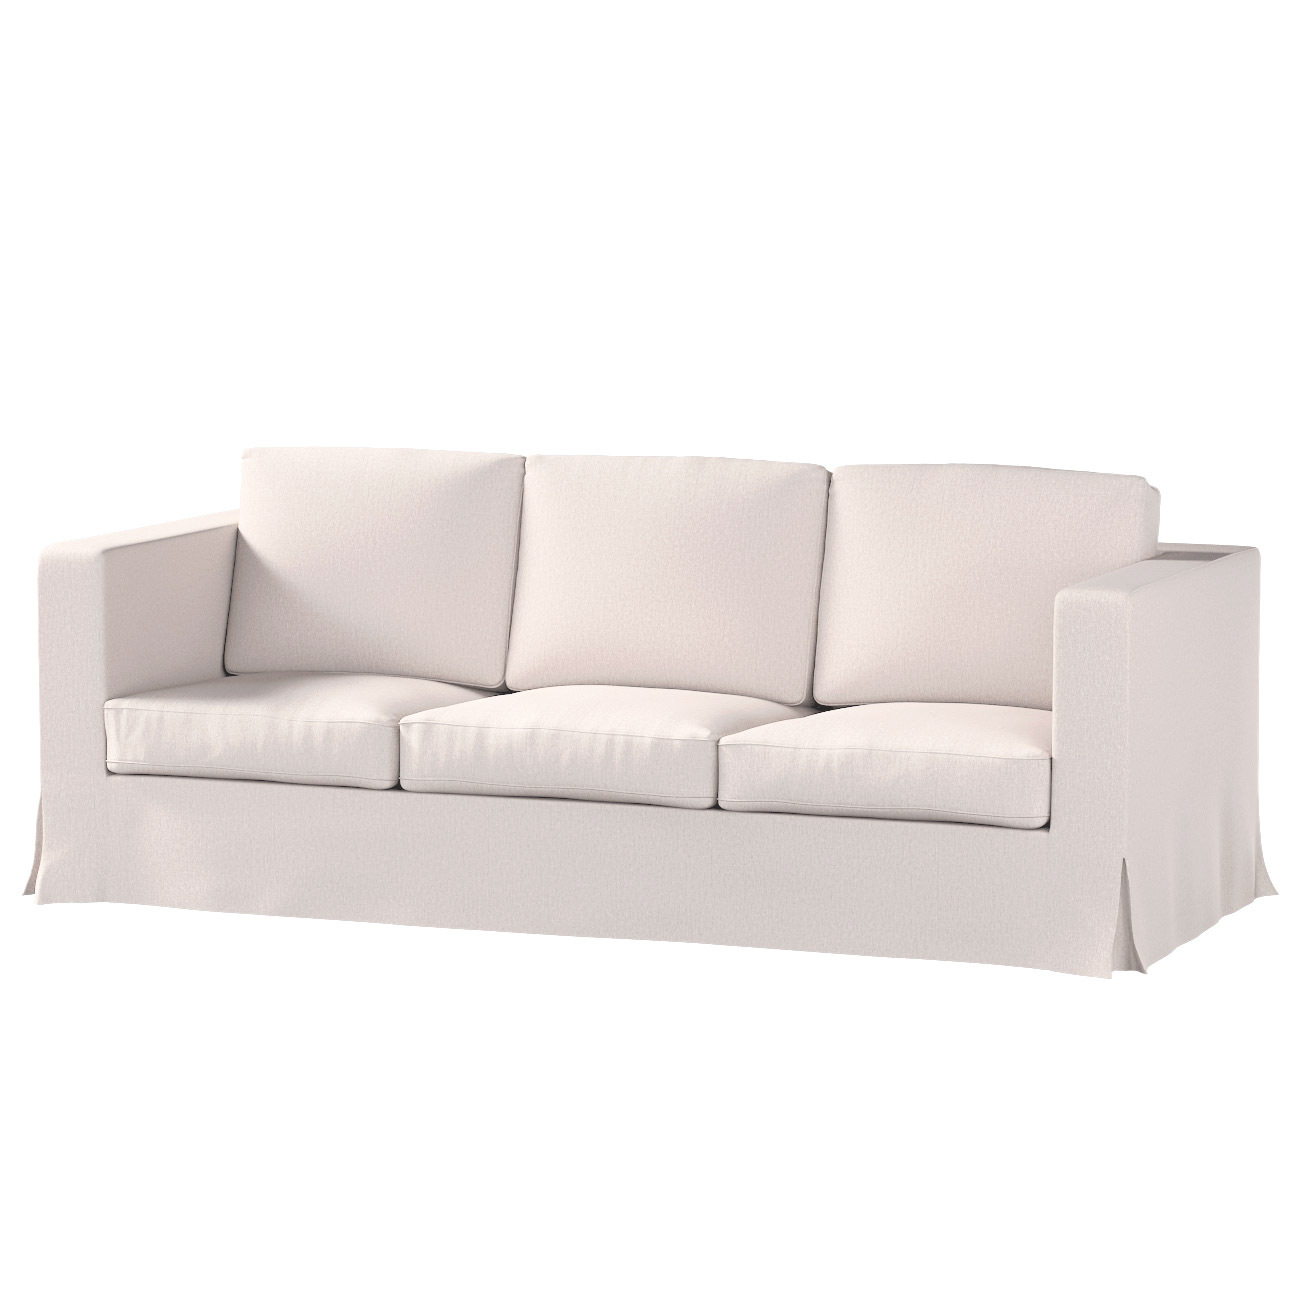 Bezug für Karlanda 3-Sitzer Sofa nicht ausklappbar, lang, hellbeige, Bezug günstig online kaufen